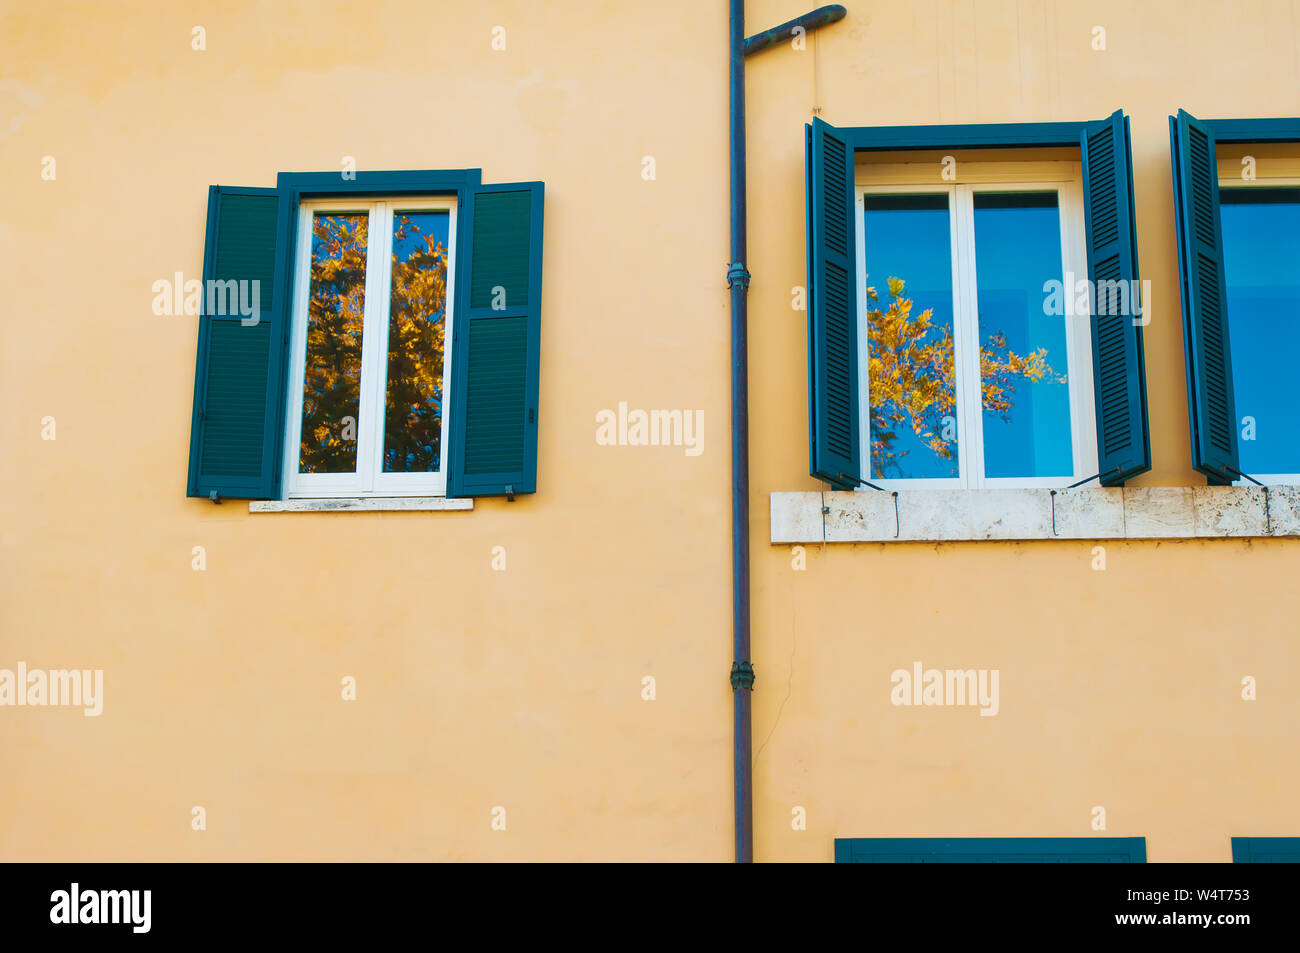 Deux fenêtres avec volets vert foncé sur un mur jaune uni. Reflet de ciel bleu et jaune des branches d'arbre. Rome, Italie Banque D'Images